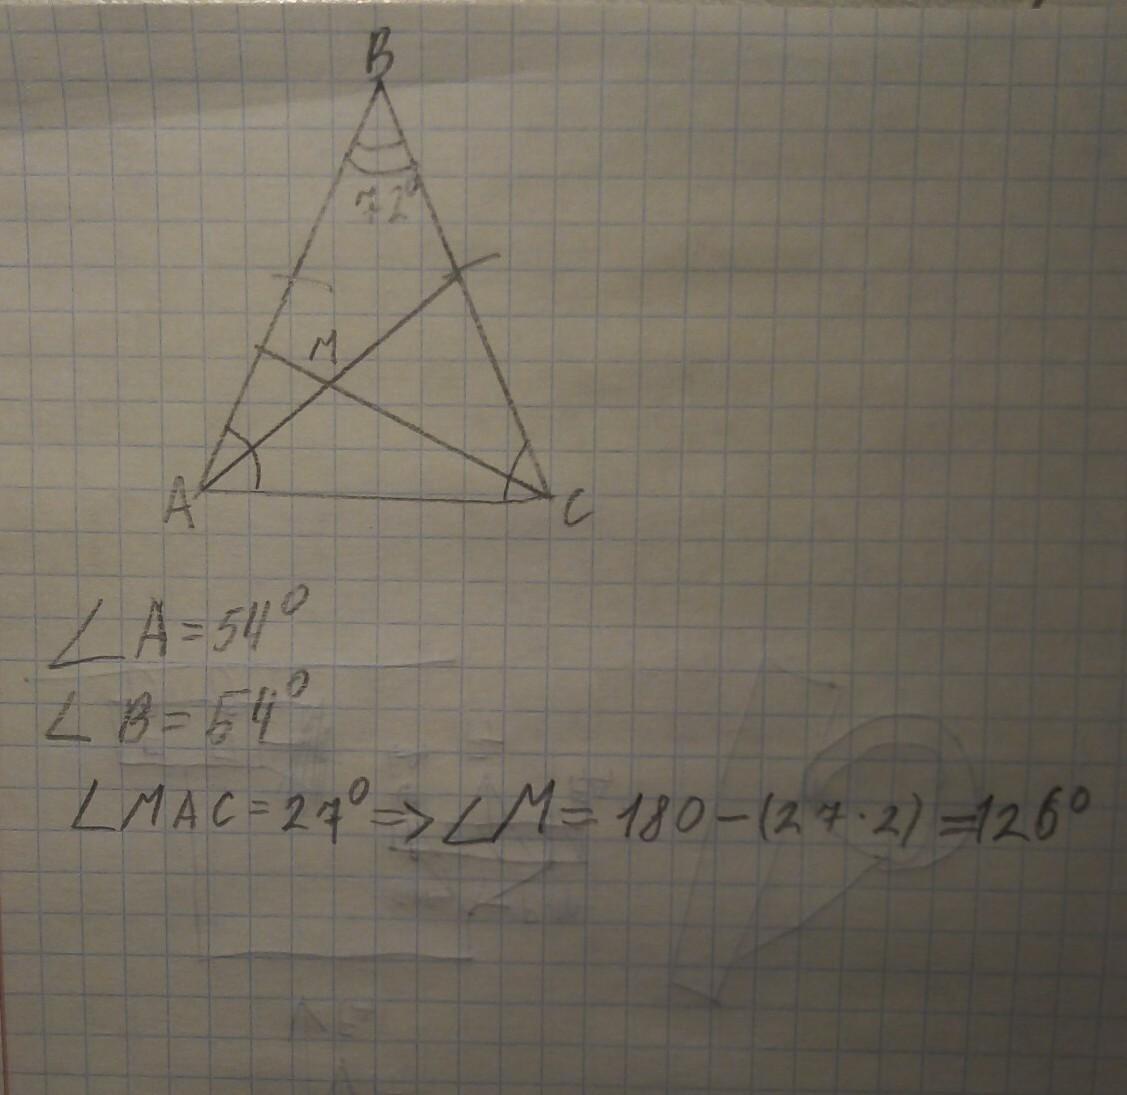 В треугольнике абс угол б равен 72. Треугольник АБС. Биссектриса. В треугольнике АВС угол стороны АВ И вс равны. В равнобедренном треугольнике пересекаются биссектрисы углов.